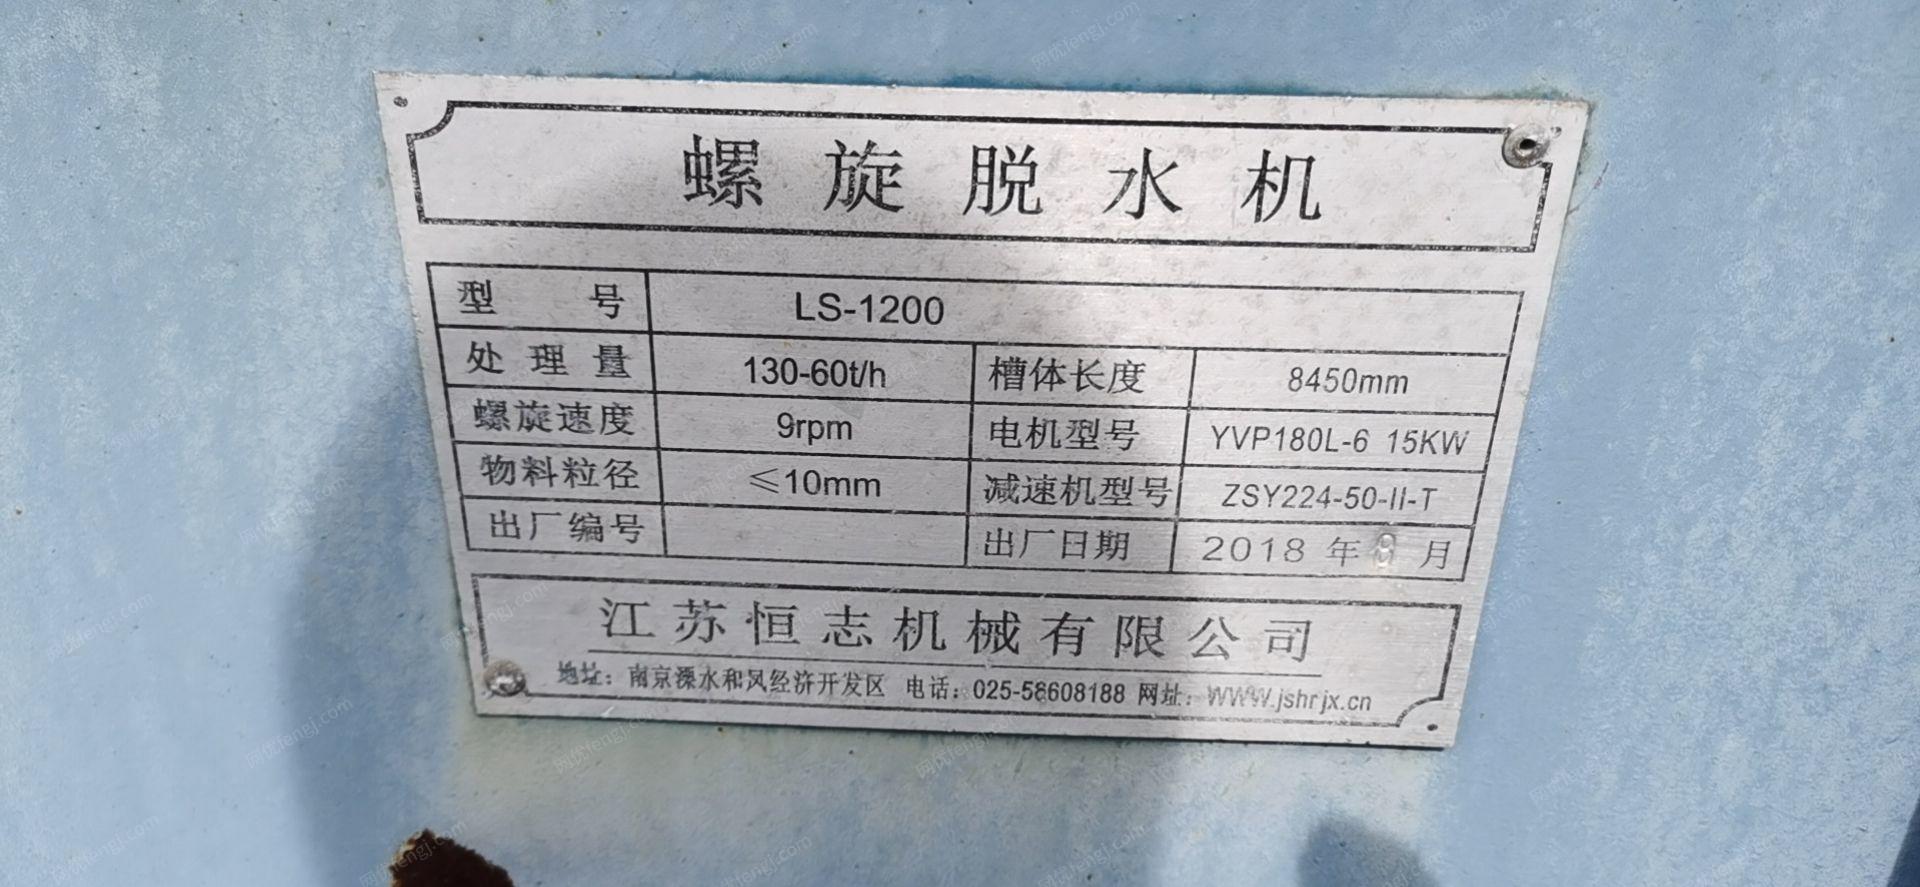 石英砂公司就近出售江苏恒志LS-1200螺旋脱水机1台，10米绞龙2个，直径2.2米/长28米滚筒烘干机2台​等还有其他设备，机器在海南文昌，要求看货议价